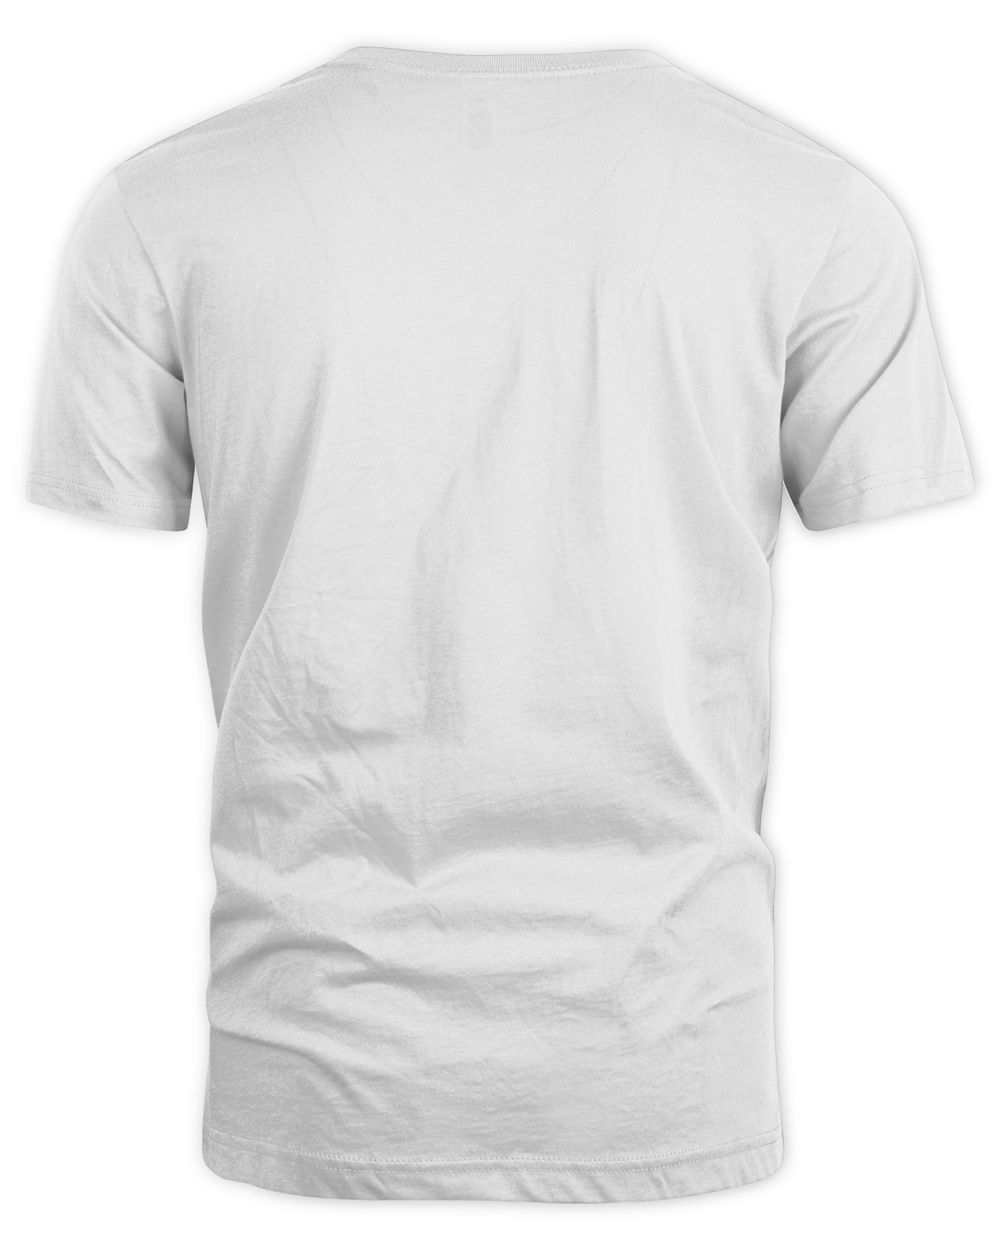 $not Merch Whipski Florida Tour Globe Shirt Unisex Standard T-Shirt white 